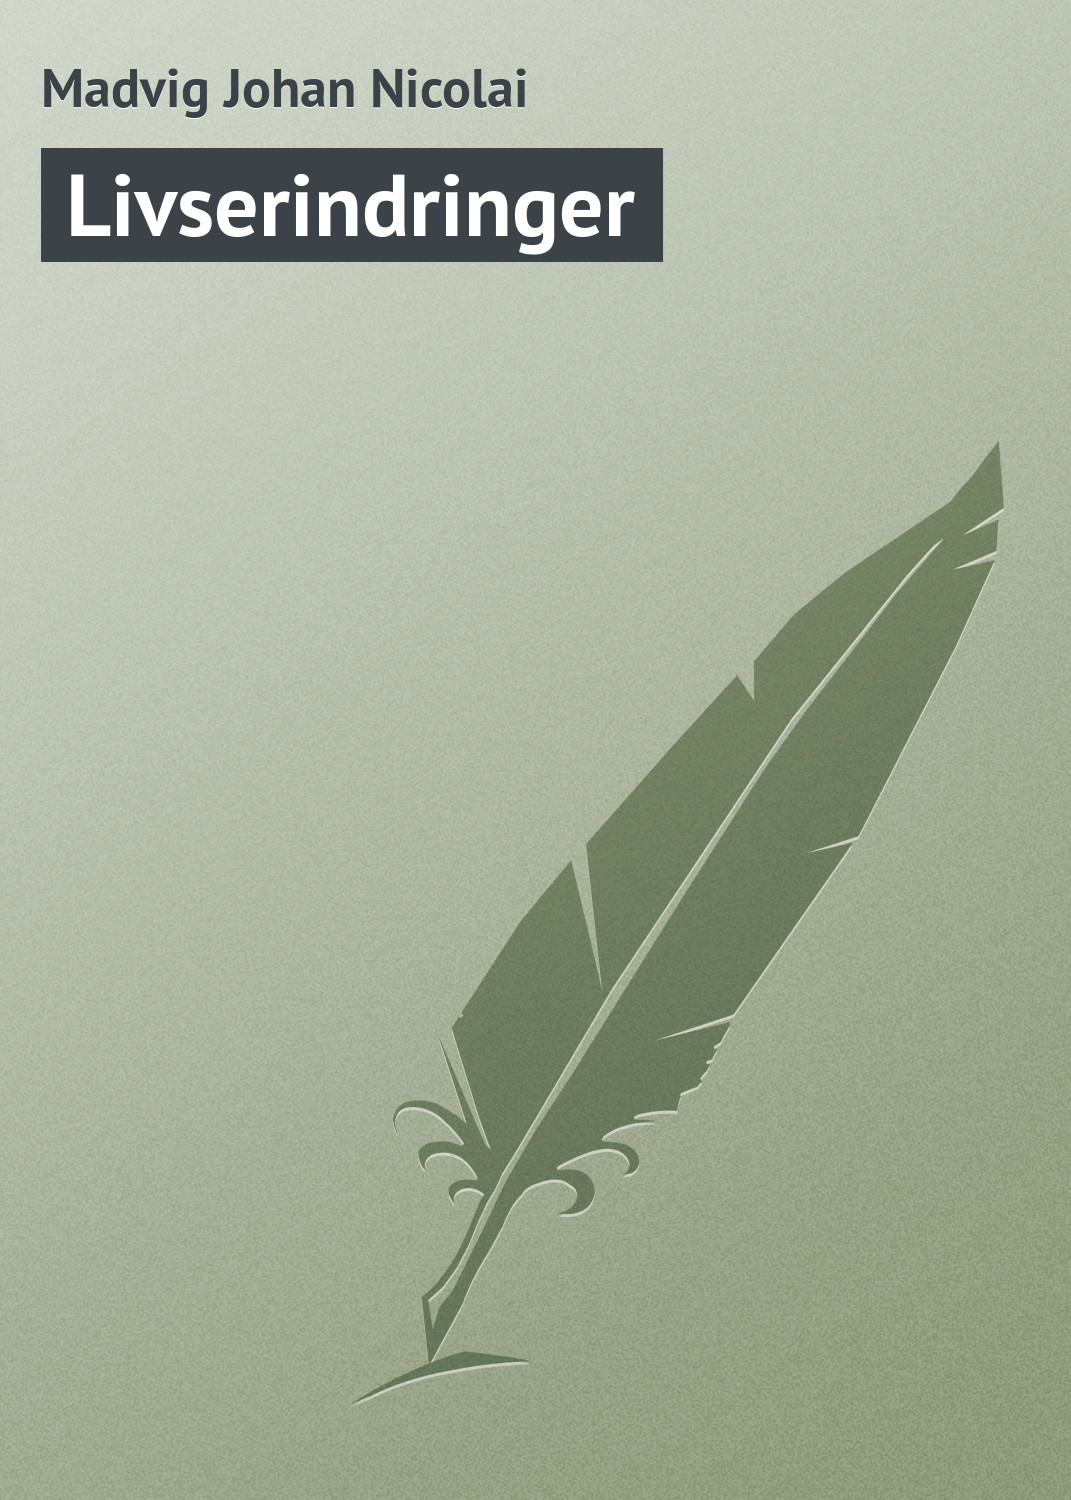 Книга Livserindringer из серии , созданная Madvig Johan, может относится к жанру Зарубежная старинная литература, Зарубежная классика. Стоимость электронной книги Livserindringer с идентификатором 21106446 составляет 5.99 руб.